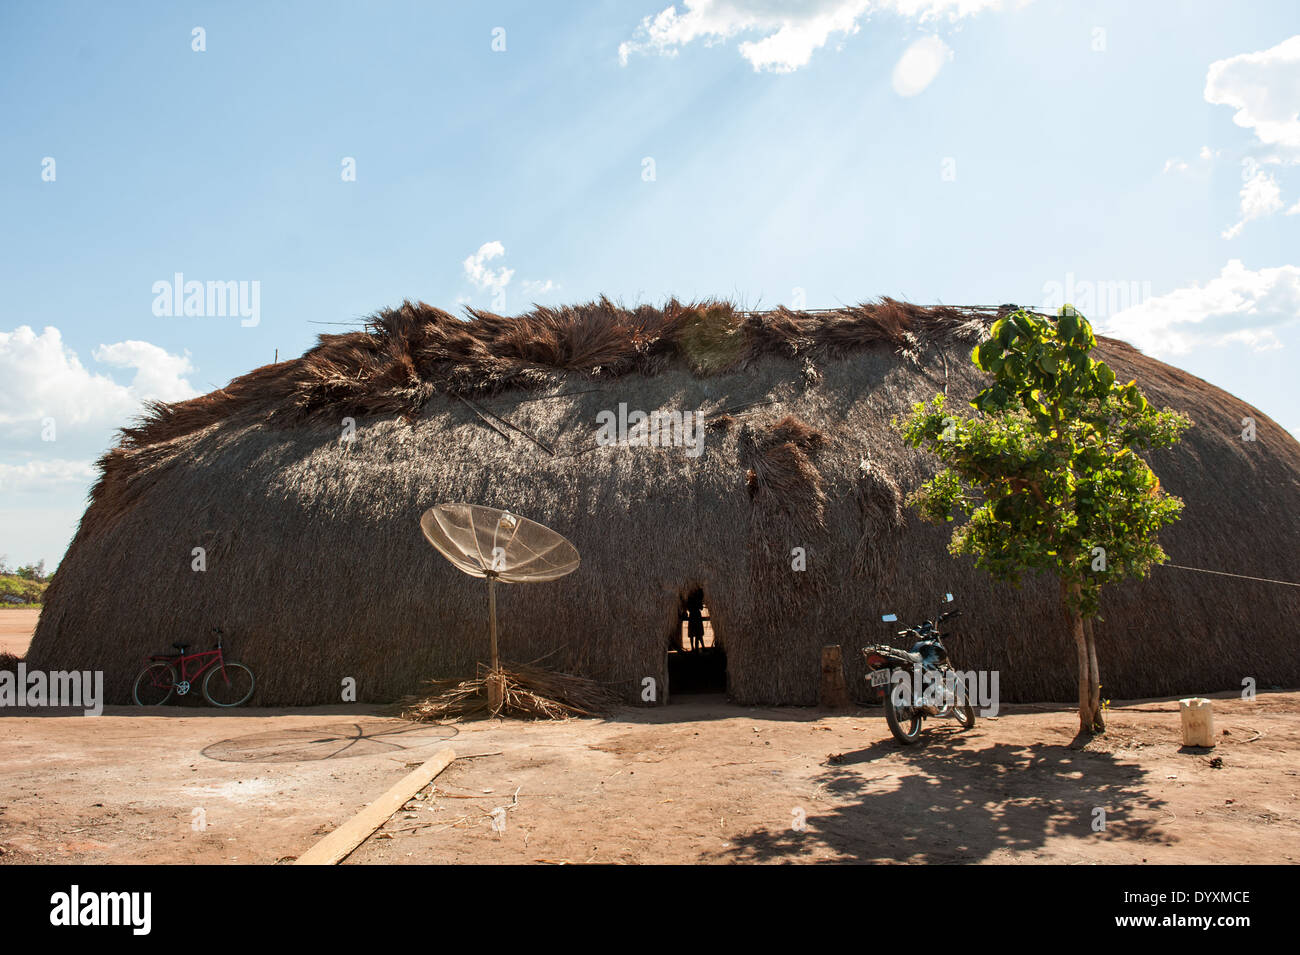 Le parc indigène du Xingu, Mato Grosso, Brésil. Aldeia. Matipu Maison de famille traditionnelle Oca, location, satellite dish, moto et arbre. Combinaison de la culture traditionnelle et les nouvelles technologies. Banque D'Images